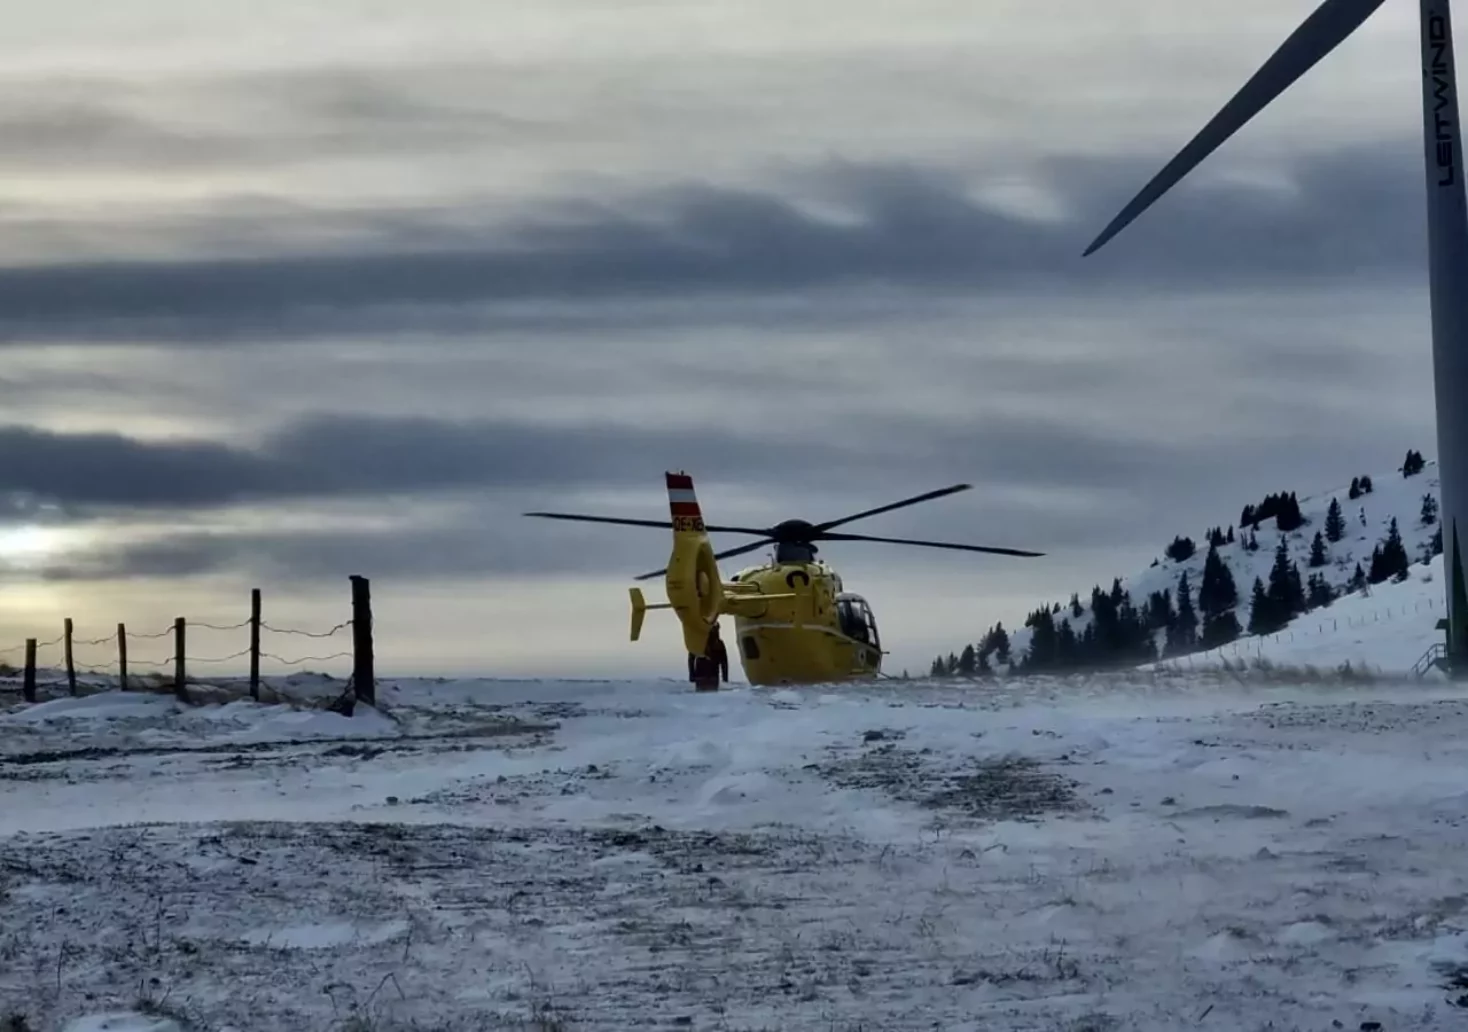 Bild auf 5min.at zeigt einem ÖAMTC-Hubschrauber beim Einsatz am Salzstiegl.